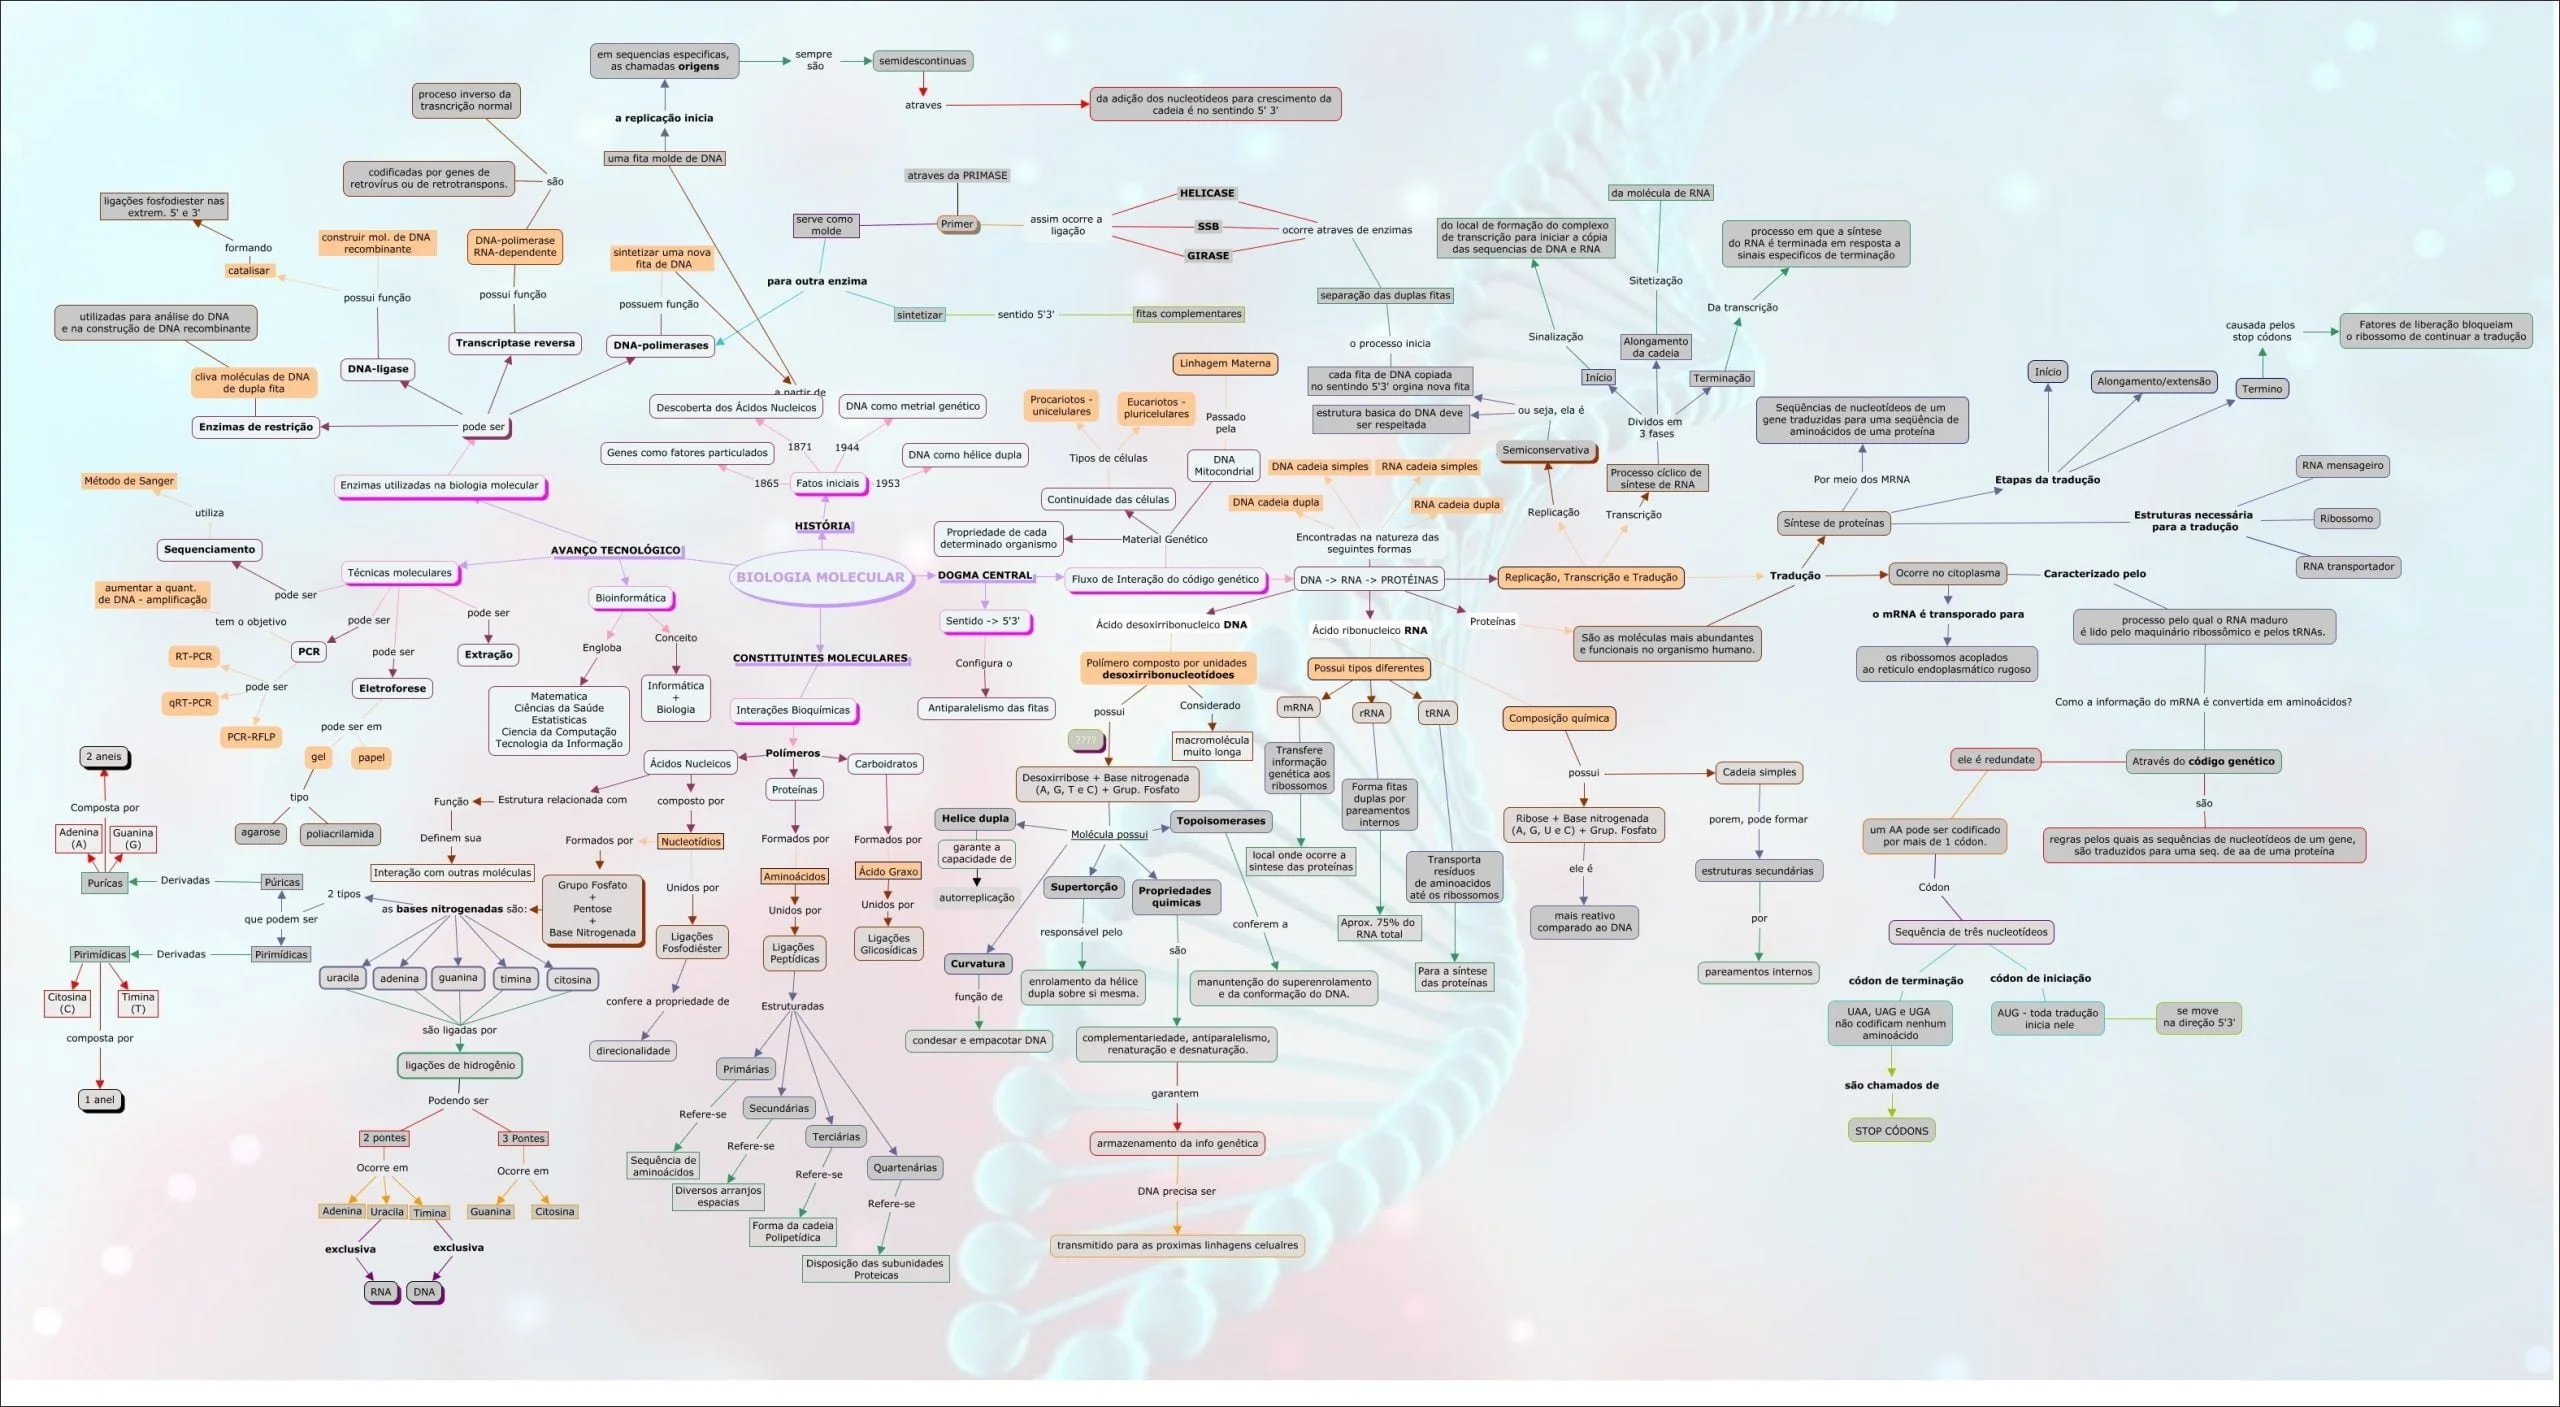 Mapas Mentais sobre DUPLICAÇÃO DO DNA - Study Maps  Duplicação do dna,  Replicação do dna, Transcrição e tradução